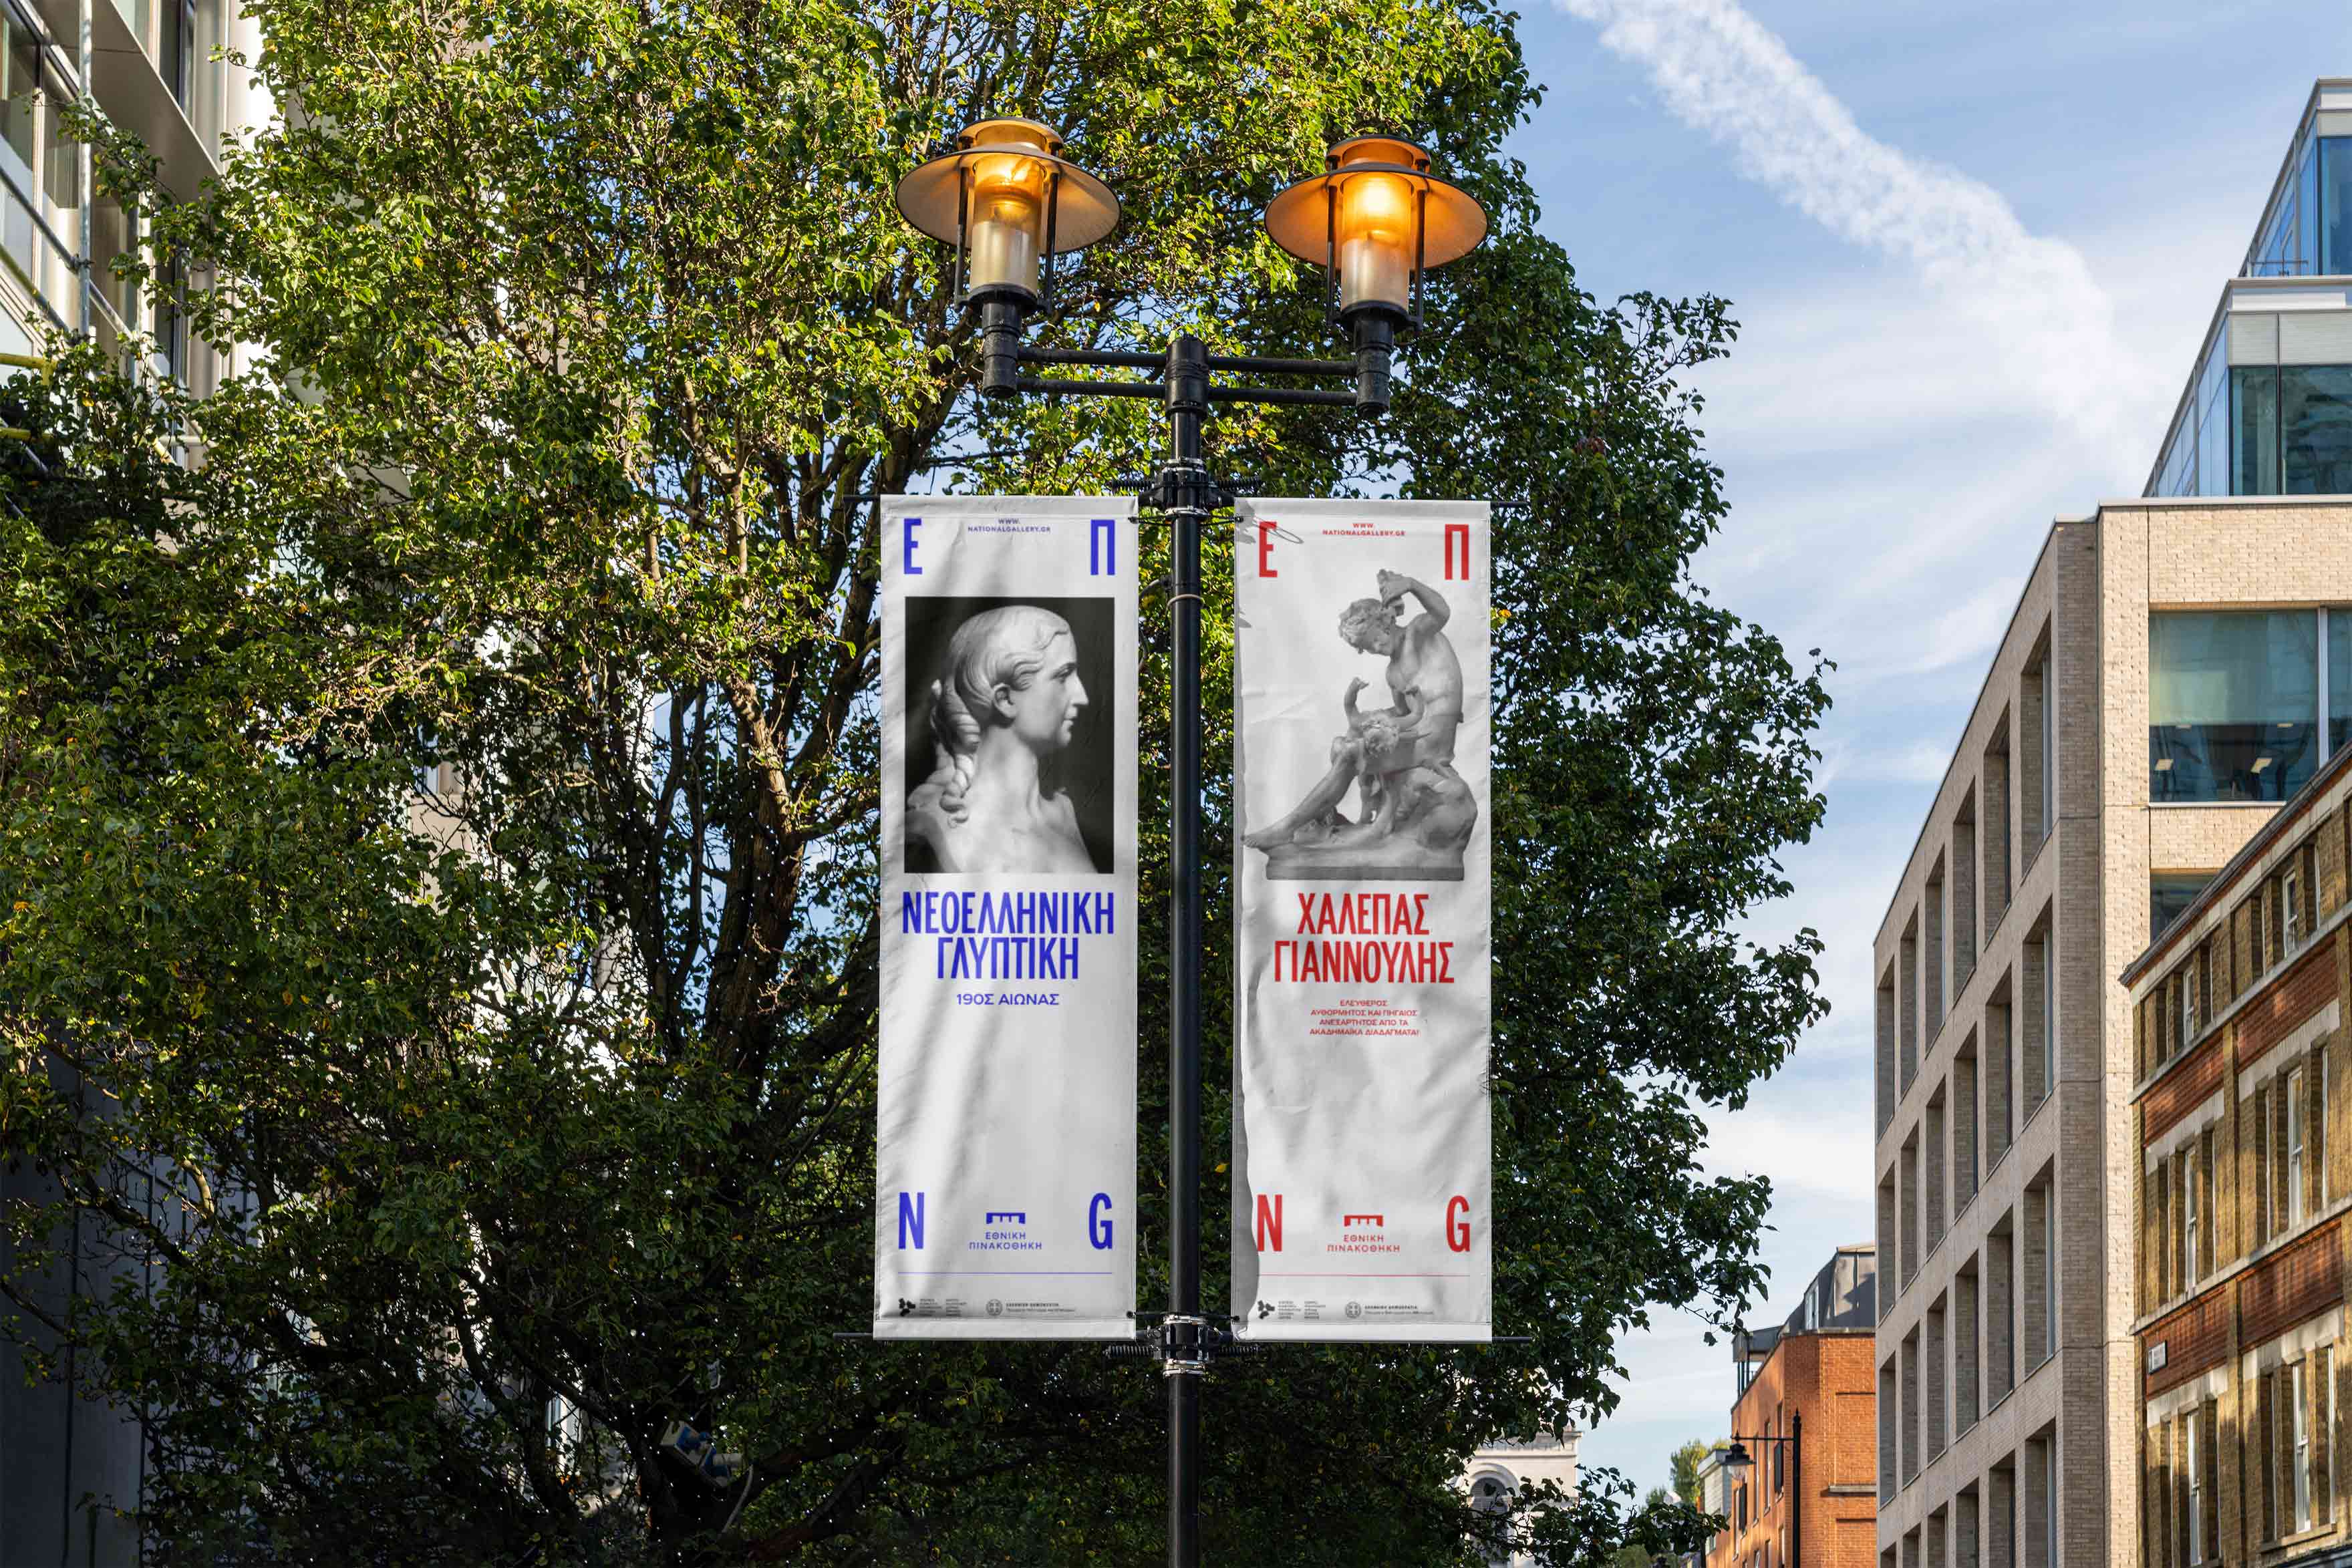 national gallery branding outdoor banners kommigraphics